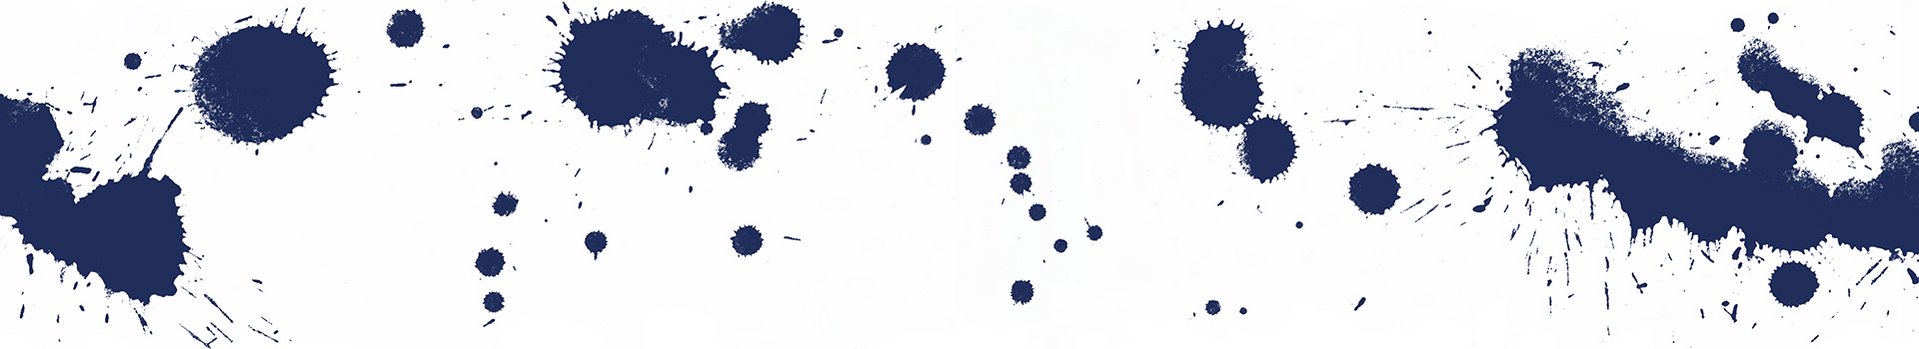 Macchie di colore blu su sfondo bianco